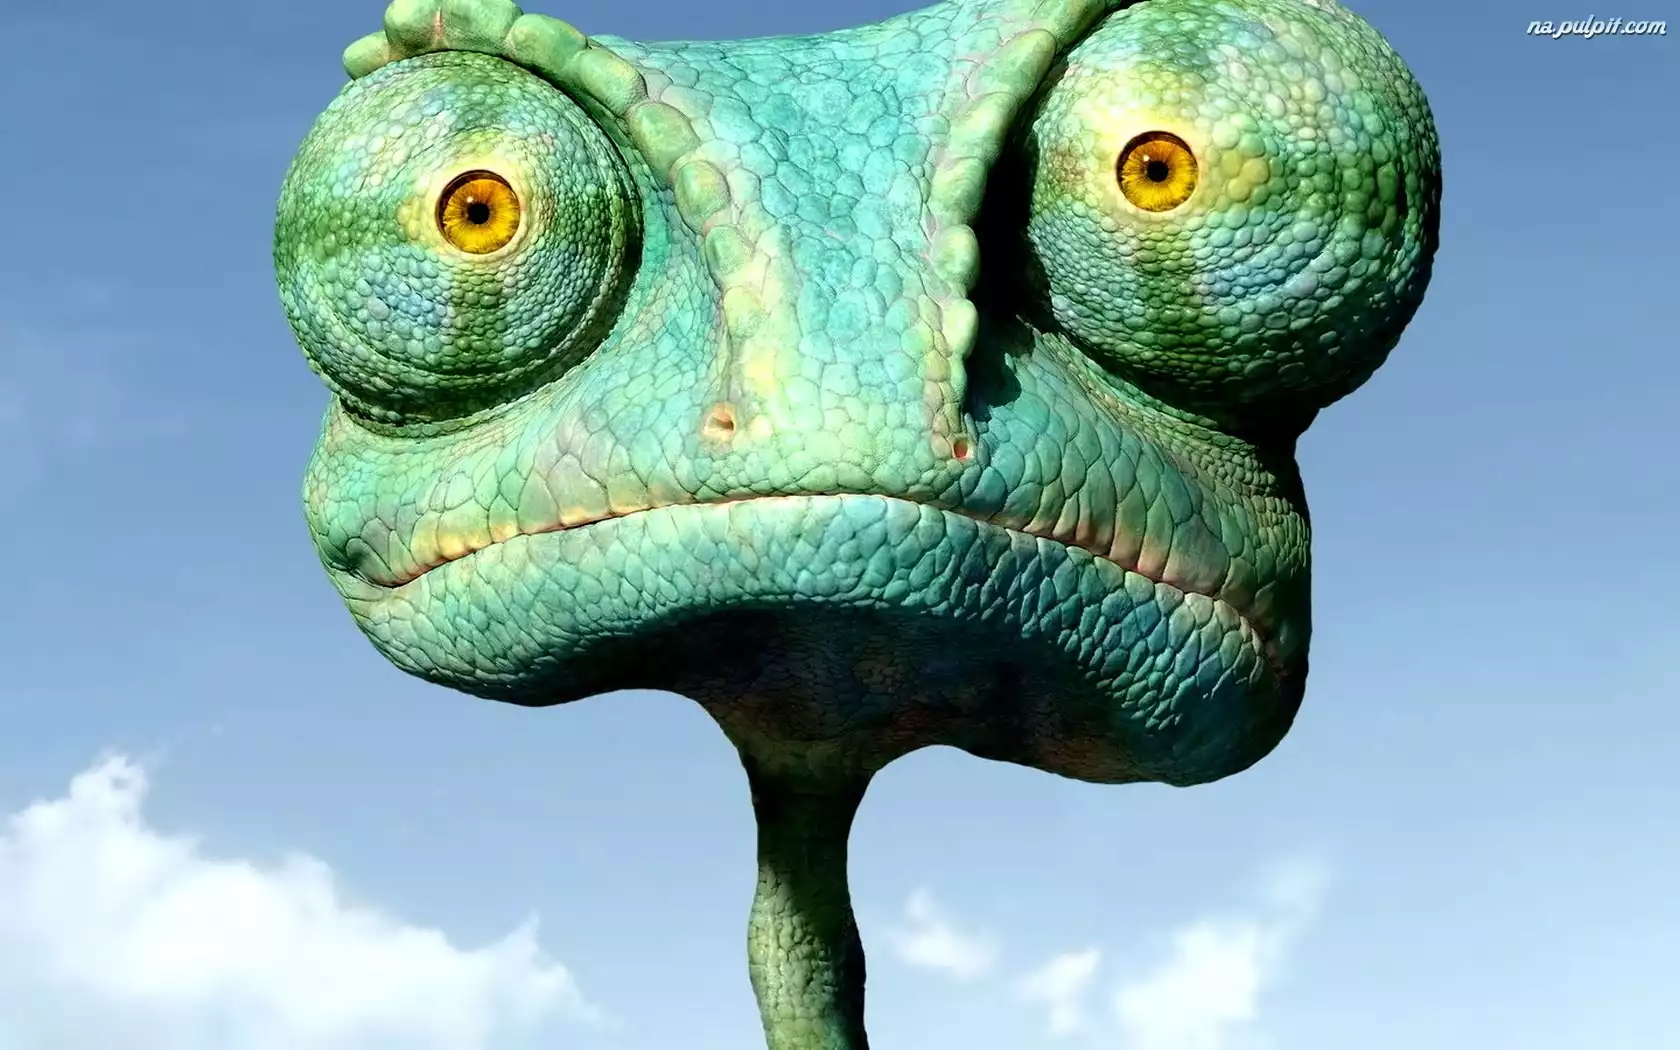 Smieszny Kameleon Na Pulpit